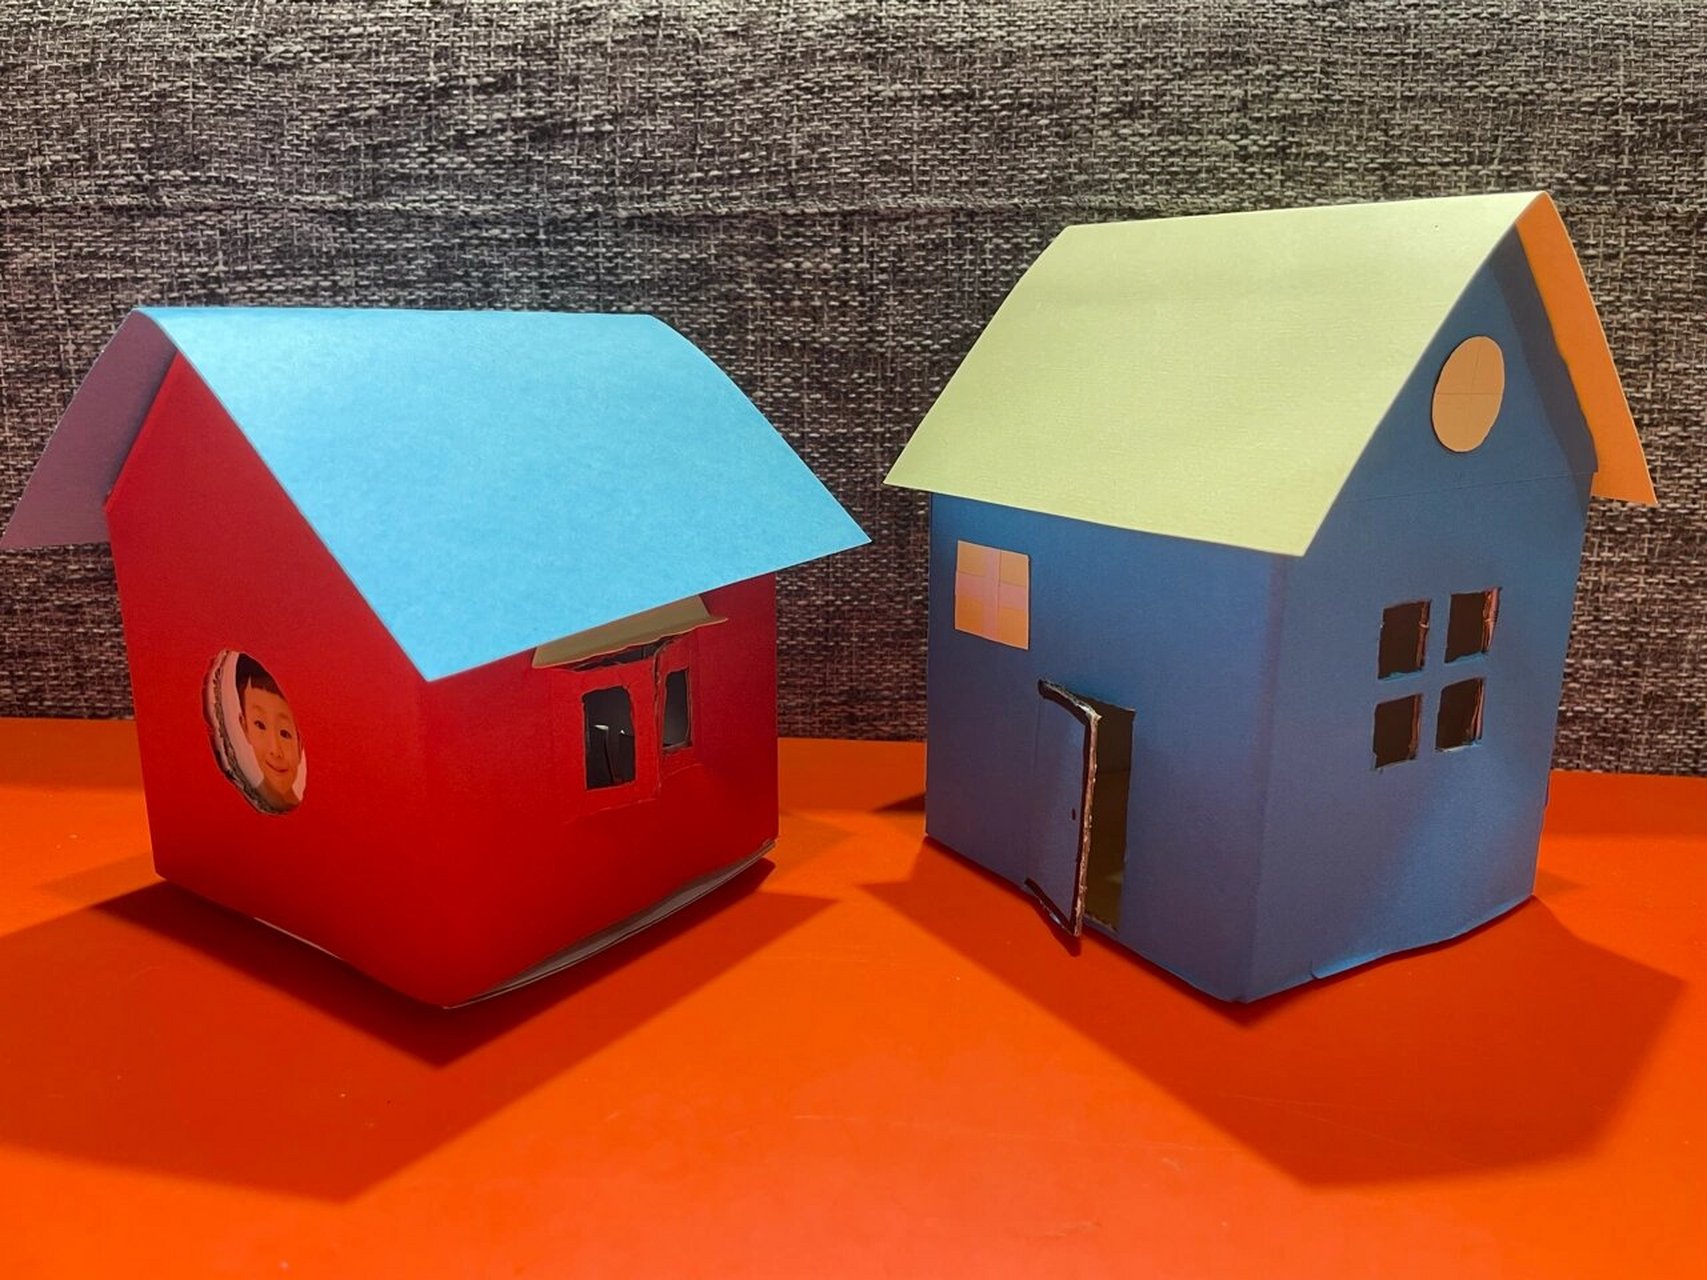 幼儿园手工作业—纸盒房子 幼儿园布置的亲子作业,用废旧纸盒做房子